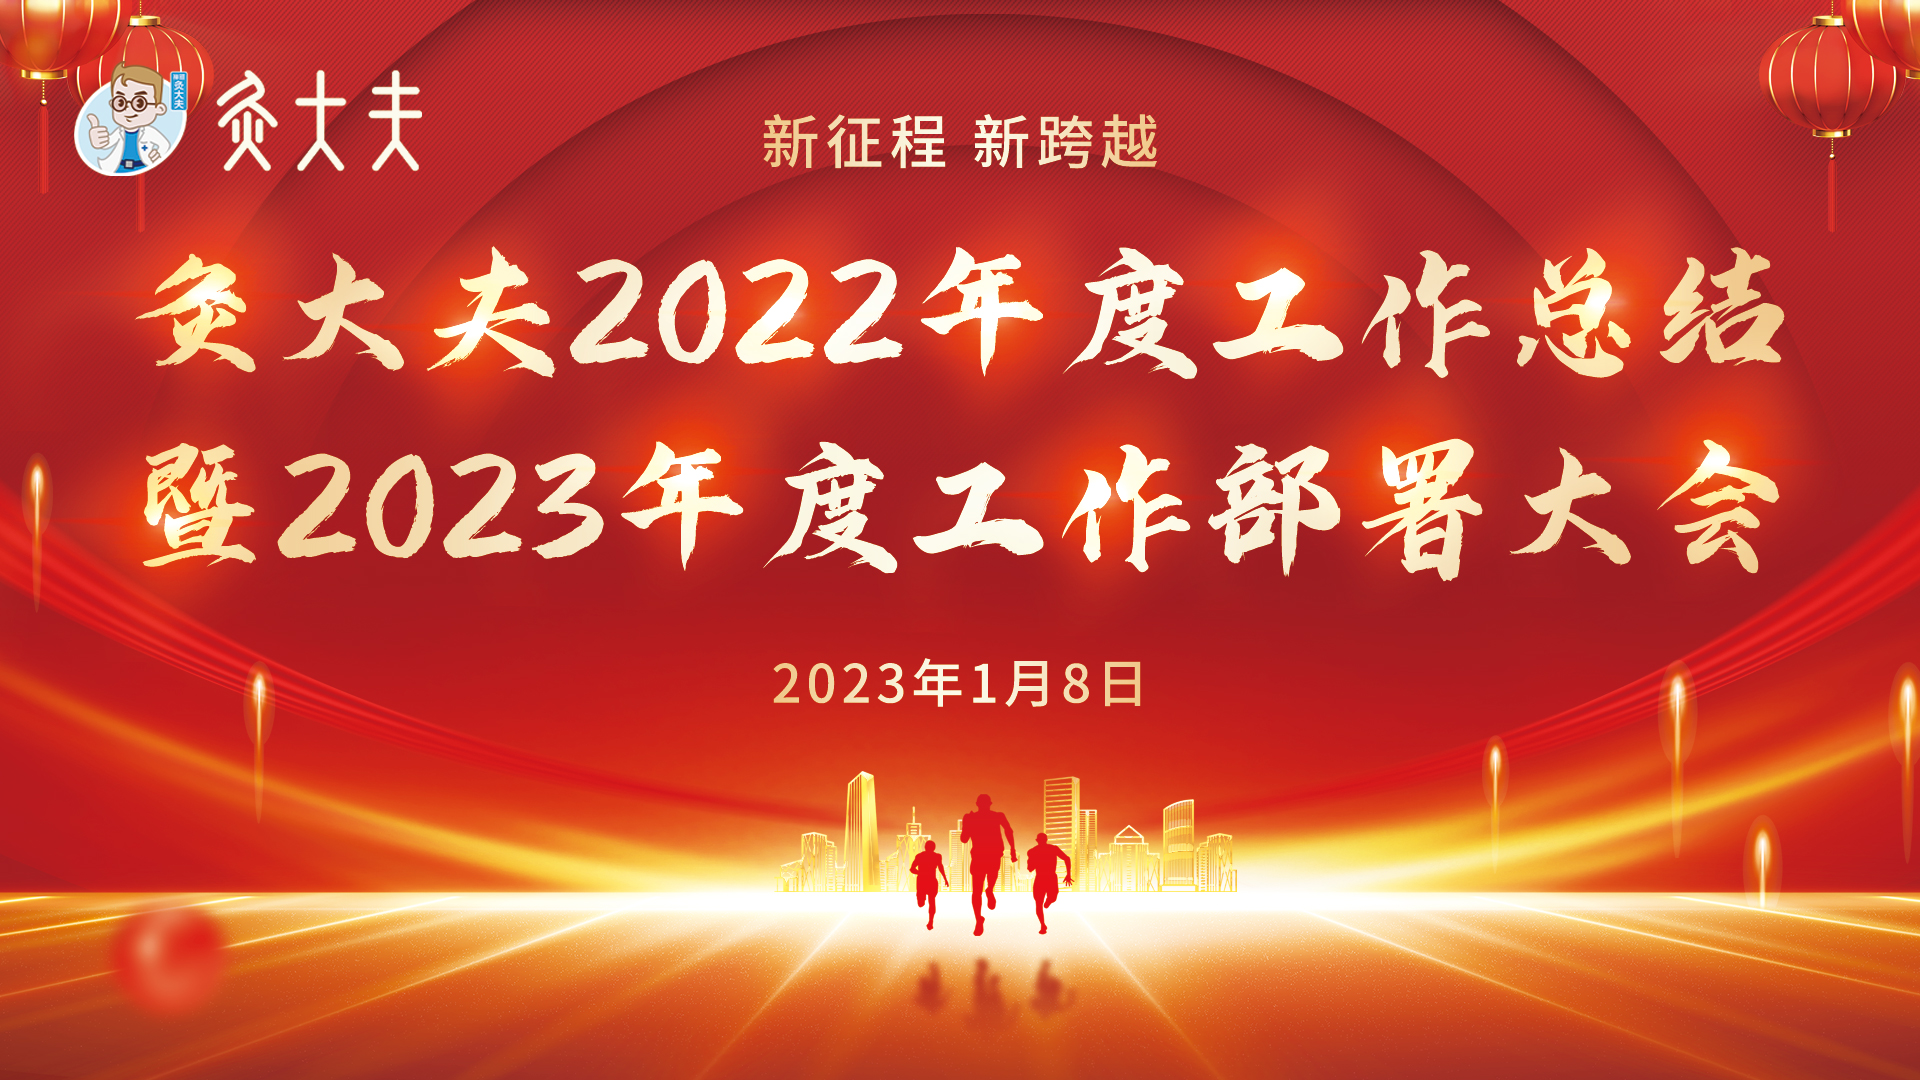 新征程 新跨越 | 灸大夫2022年度工作总结暨2023年工作部署大会圆满落幕！